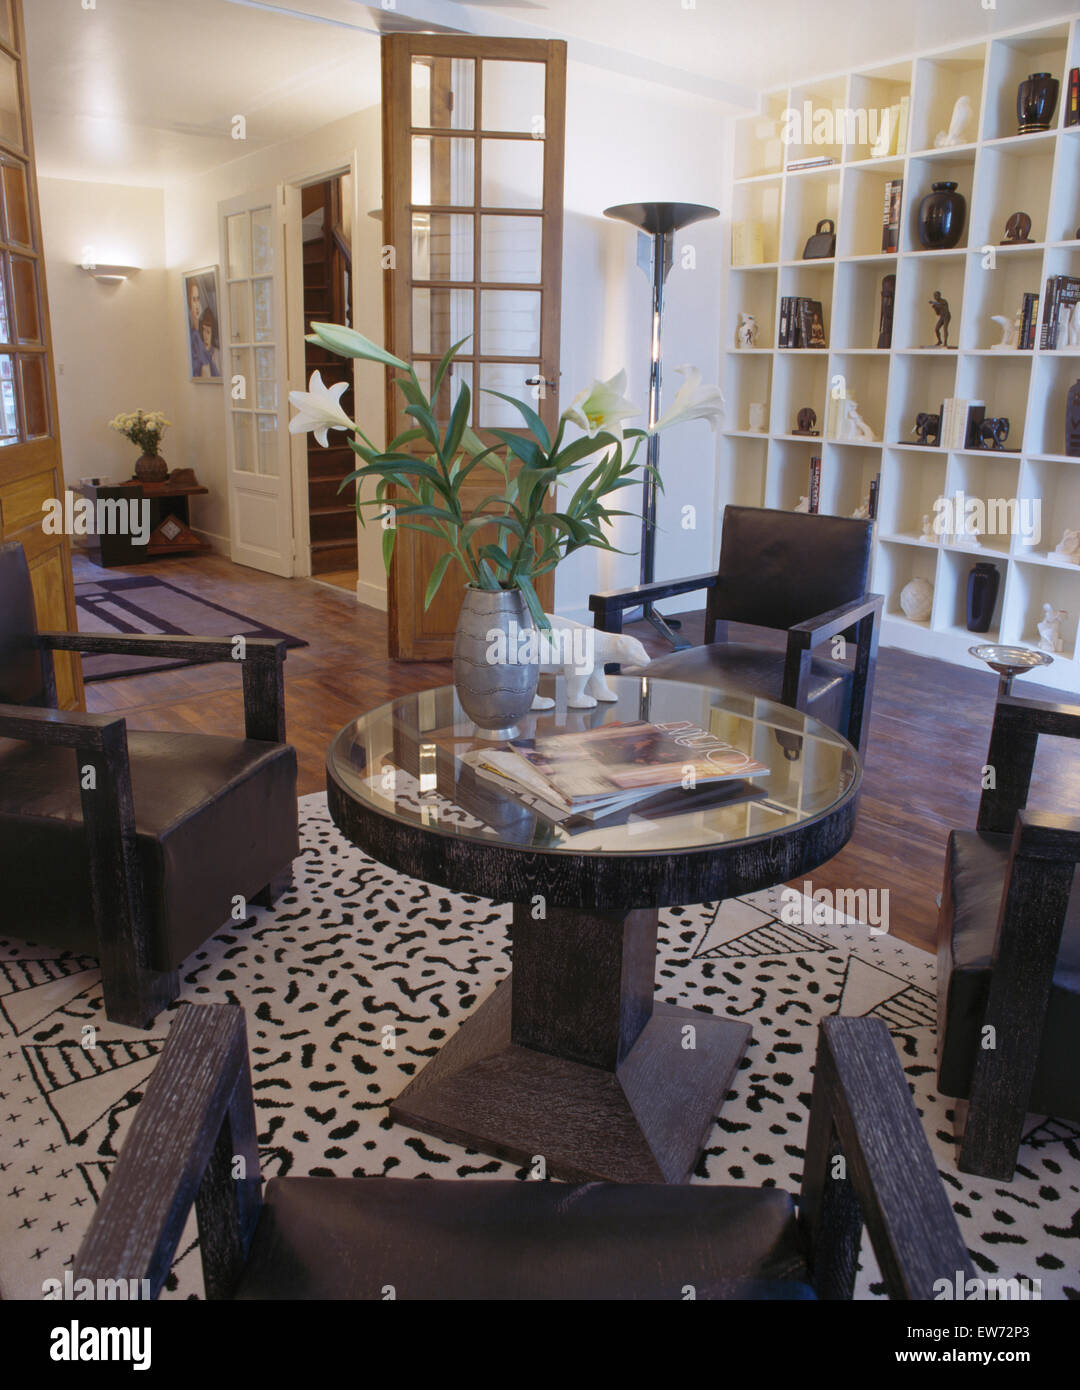 Vaso di gigli sulla tavola circolare con sedie nere in stile anni trenta area da pranzo con il cubo della scaffalatura e nero+tappeto bianco Foto Stock